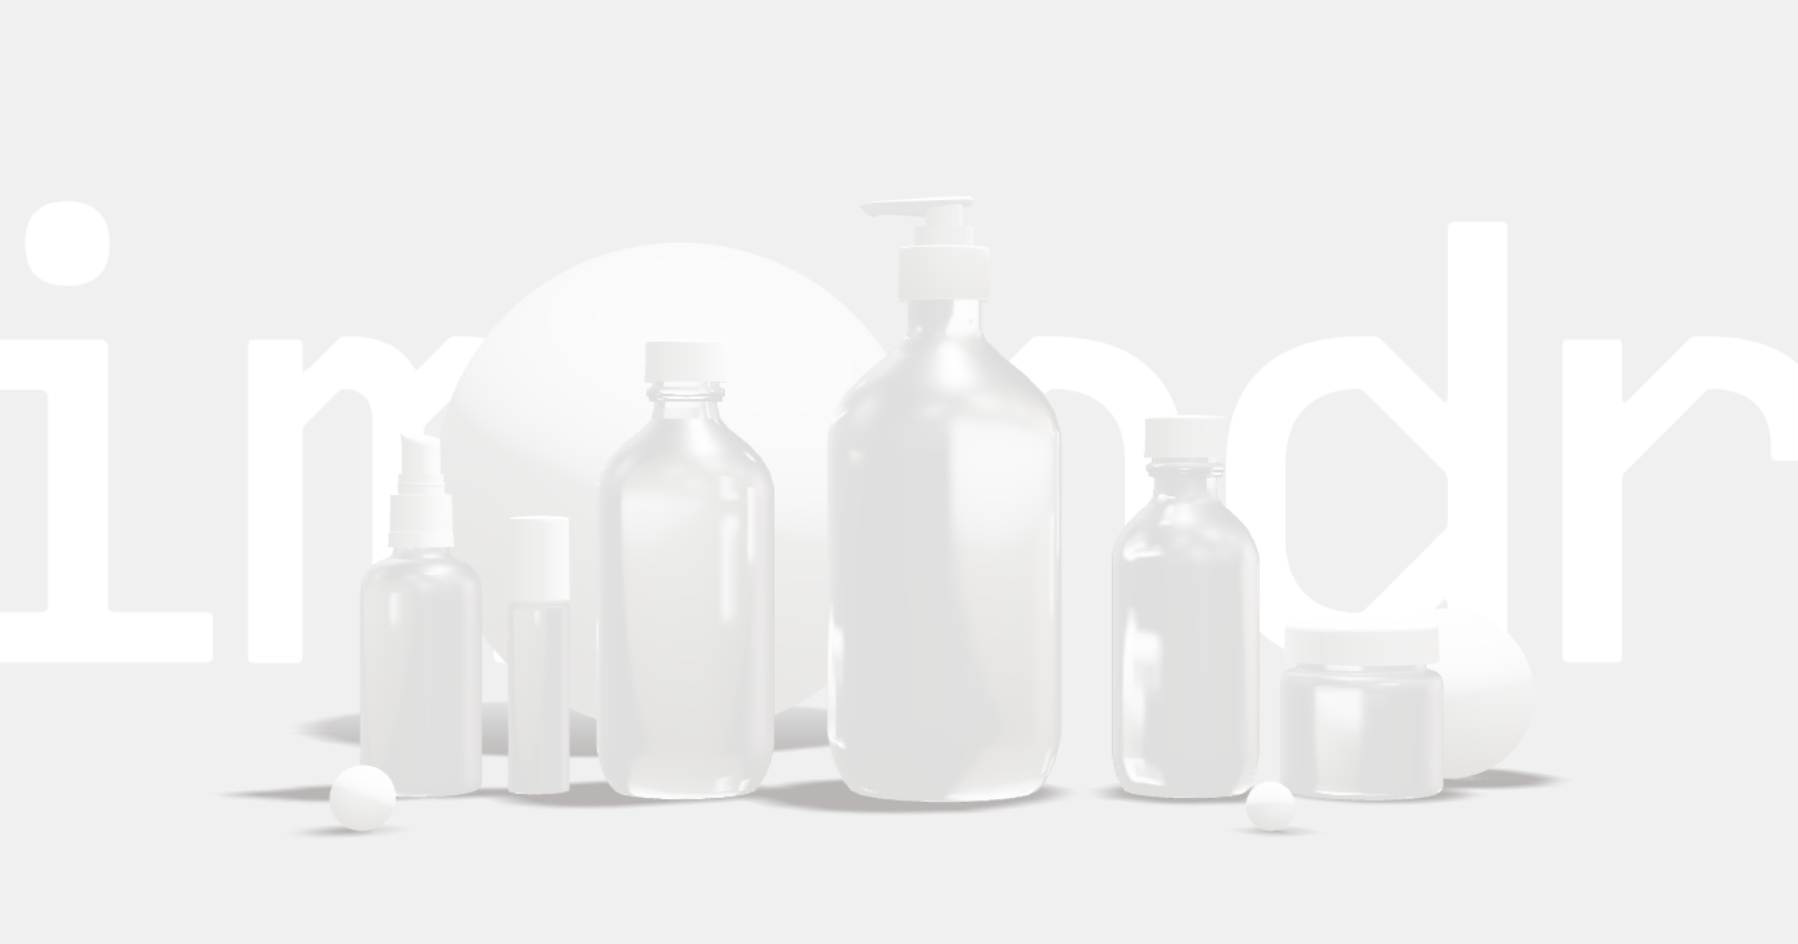 Transparent aesop bottles